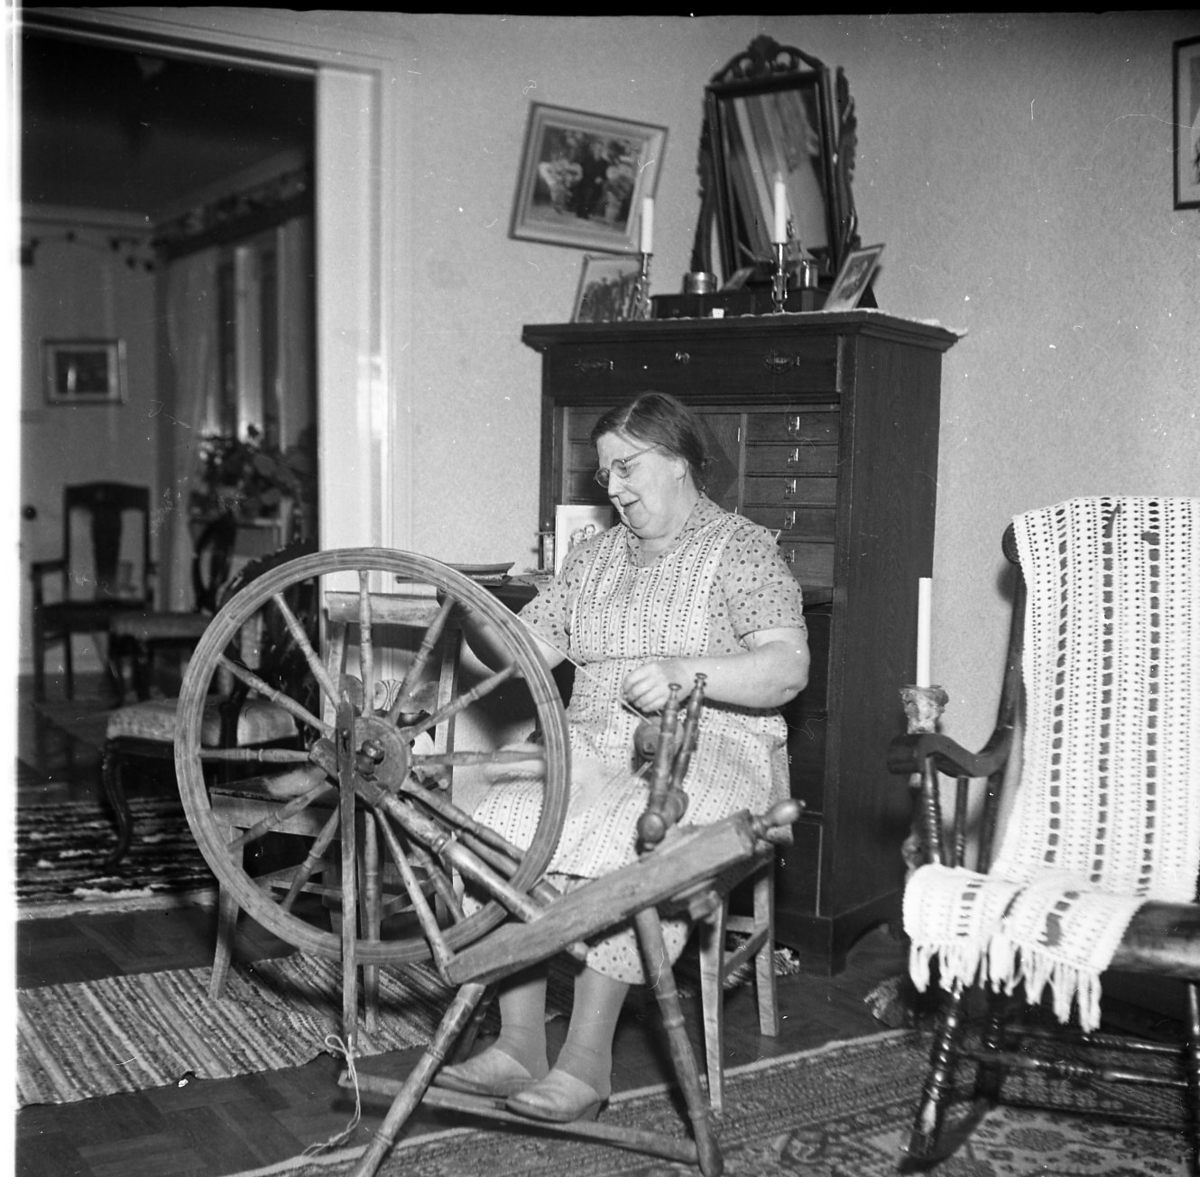 Fru Rut Sääv arbetar vid sin spinnrock i sitt hem. Bakom henne står en hög sekretär med en pigtittare ovanpå. Till höger en gungstol med troligen en virkad genombruten sjal